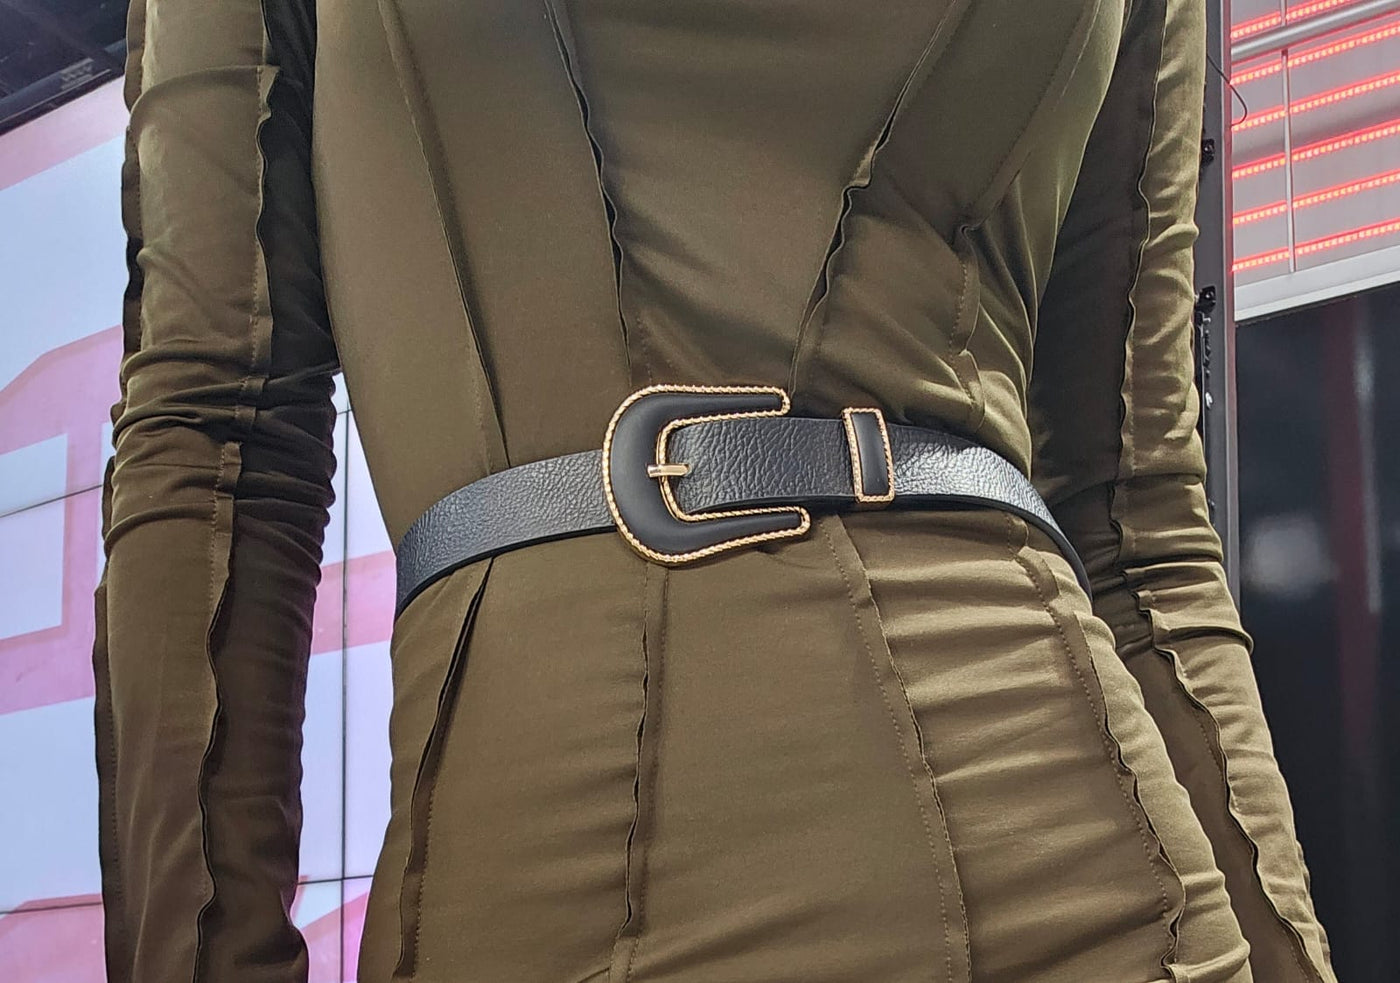 Unico - Cinturon Suela,Negro,Marron